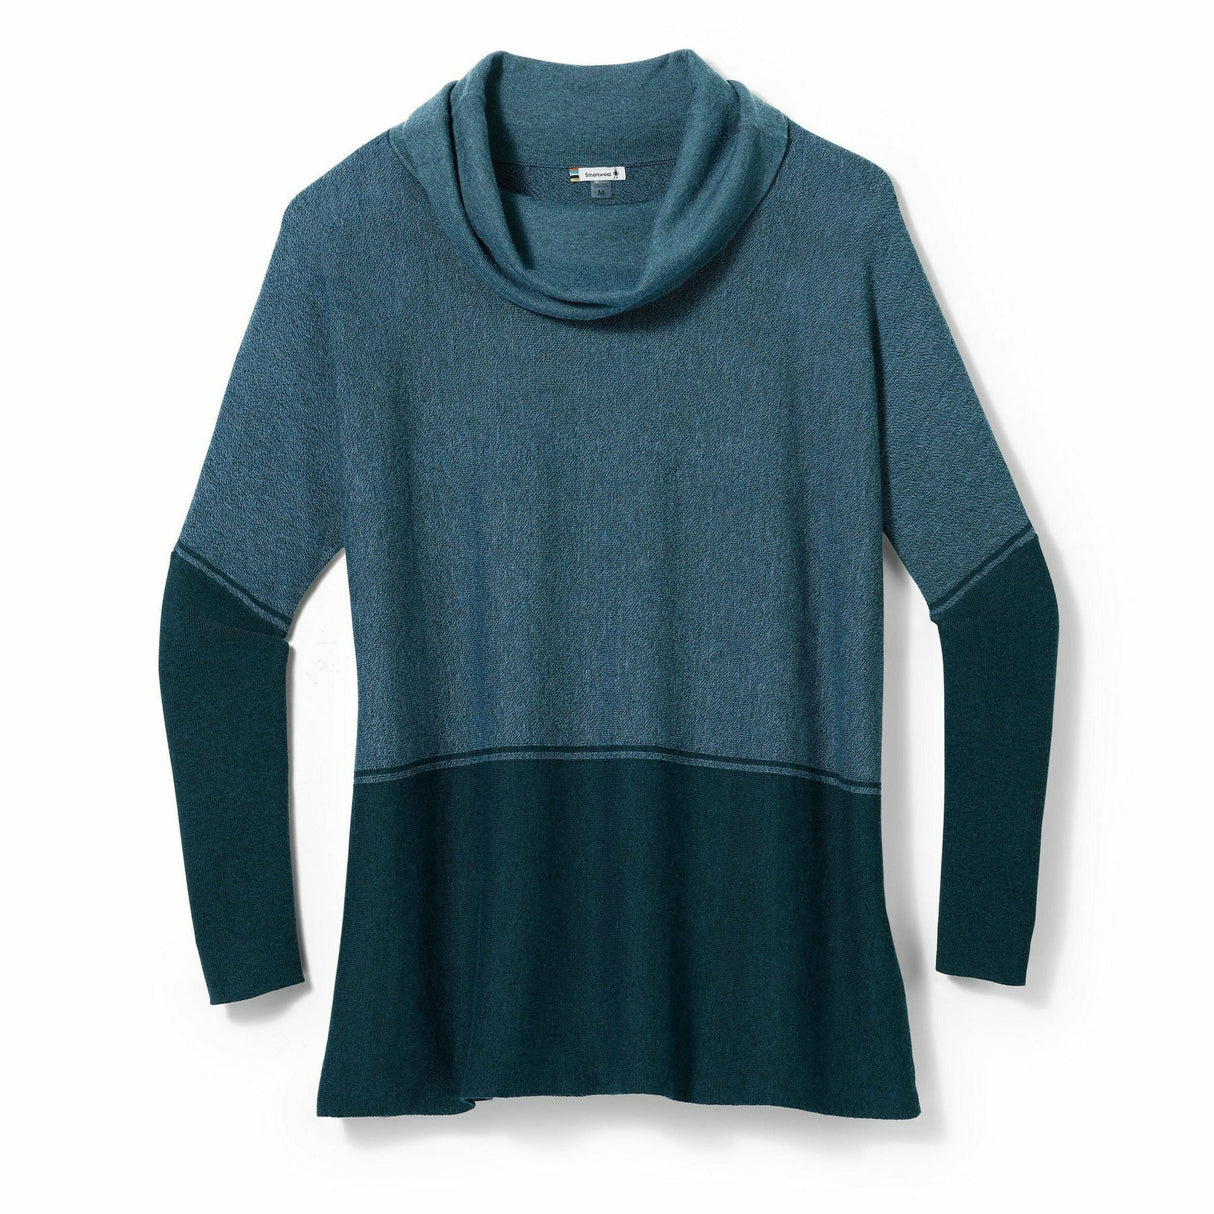 Smartwool Womens Edgewood Poncho Sweater  -  X-Small / Mist Blue/Twilight Blue Marl